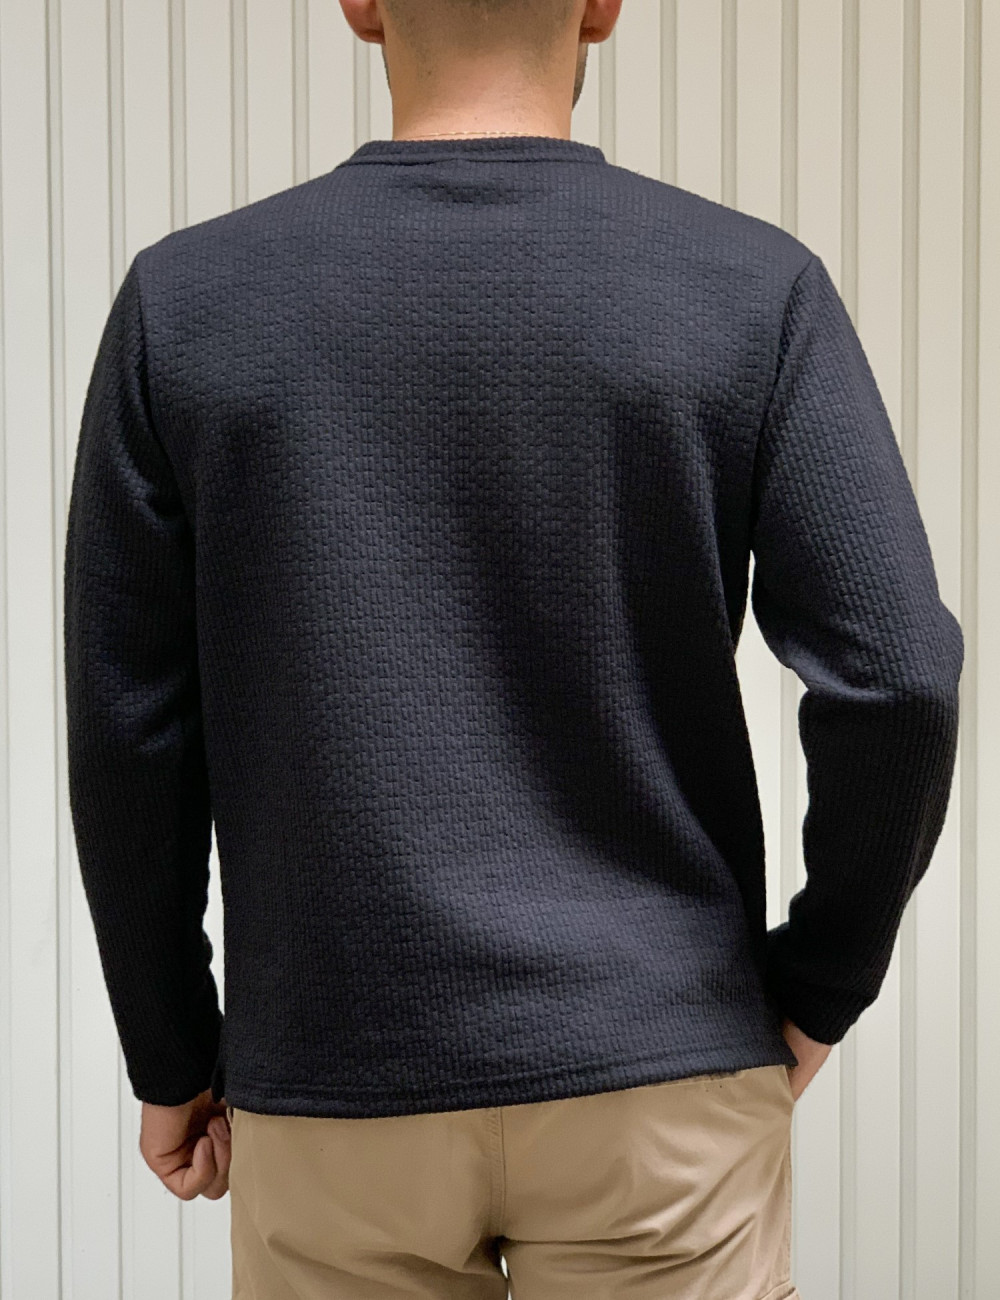 Ανδρική μαύρη μακρυμάνικη μπλούζα με ανάγλυφο σχέδιο MAJE106B